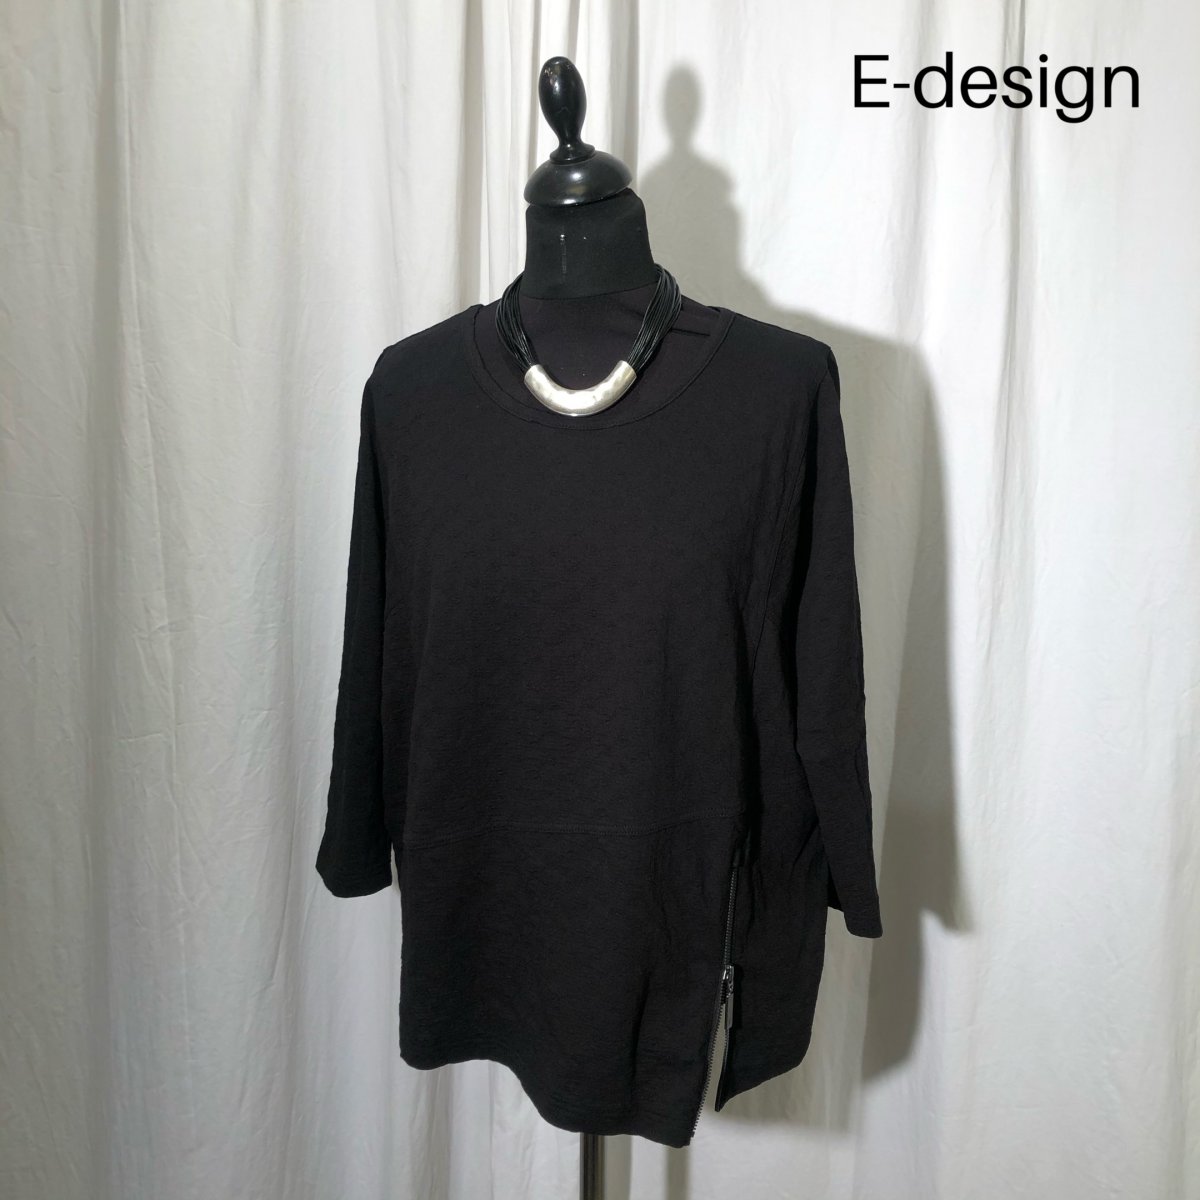 Objector binær Anzai E-design bluse med spids og lynlås sort - Bluser - Stine & Ko